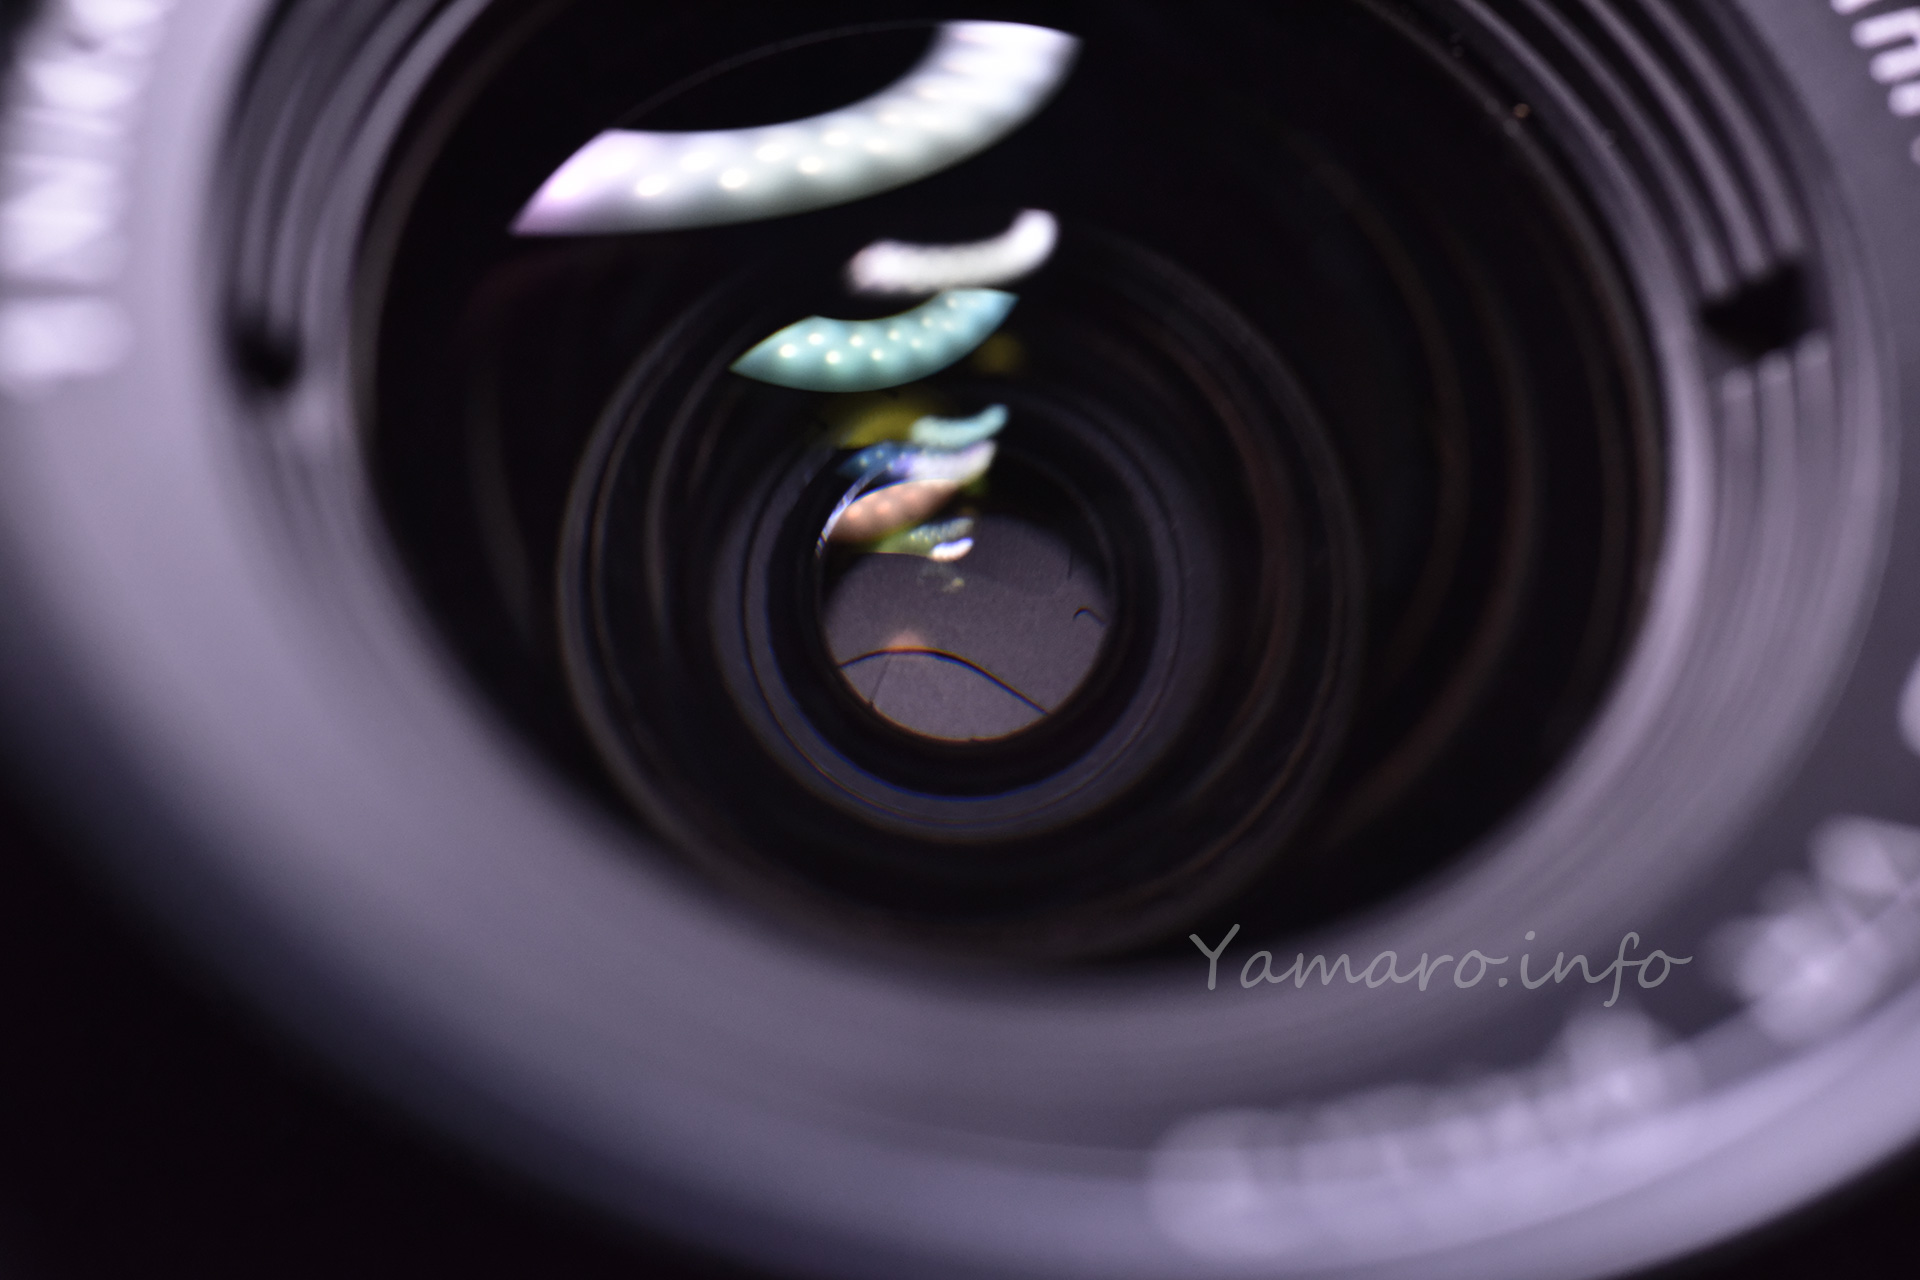 嫁カメの11 NIKKOR VR 10-30mmの絞り不調 - Blog@yamaro.info